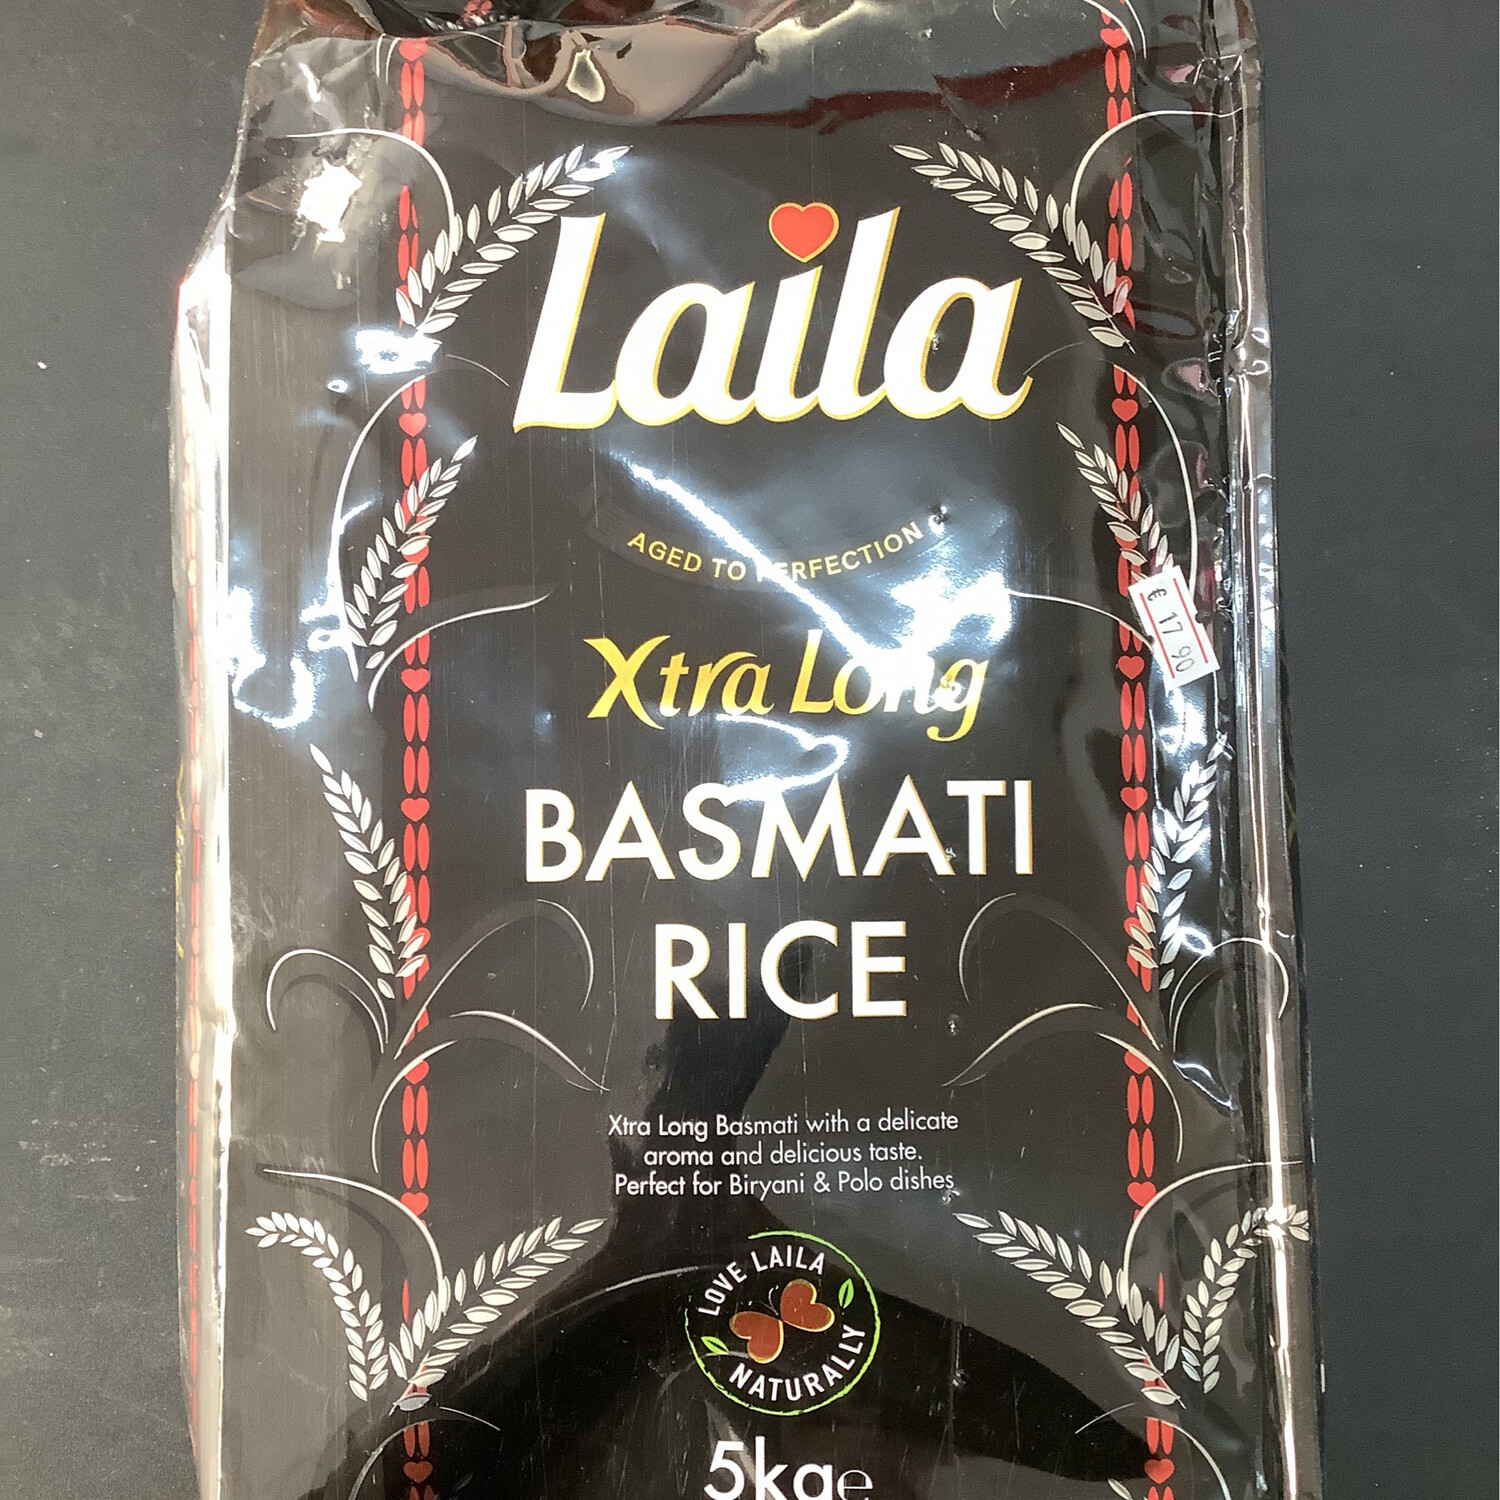 Laila Extra Long Basmati Rice 5kg